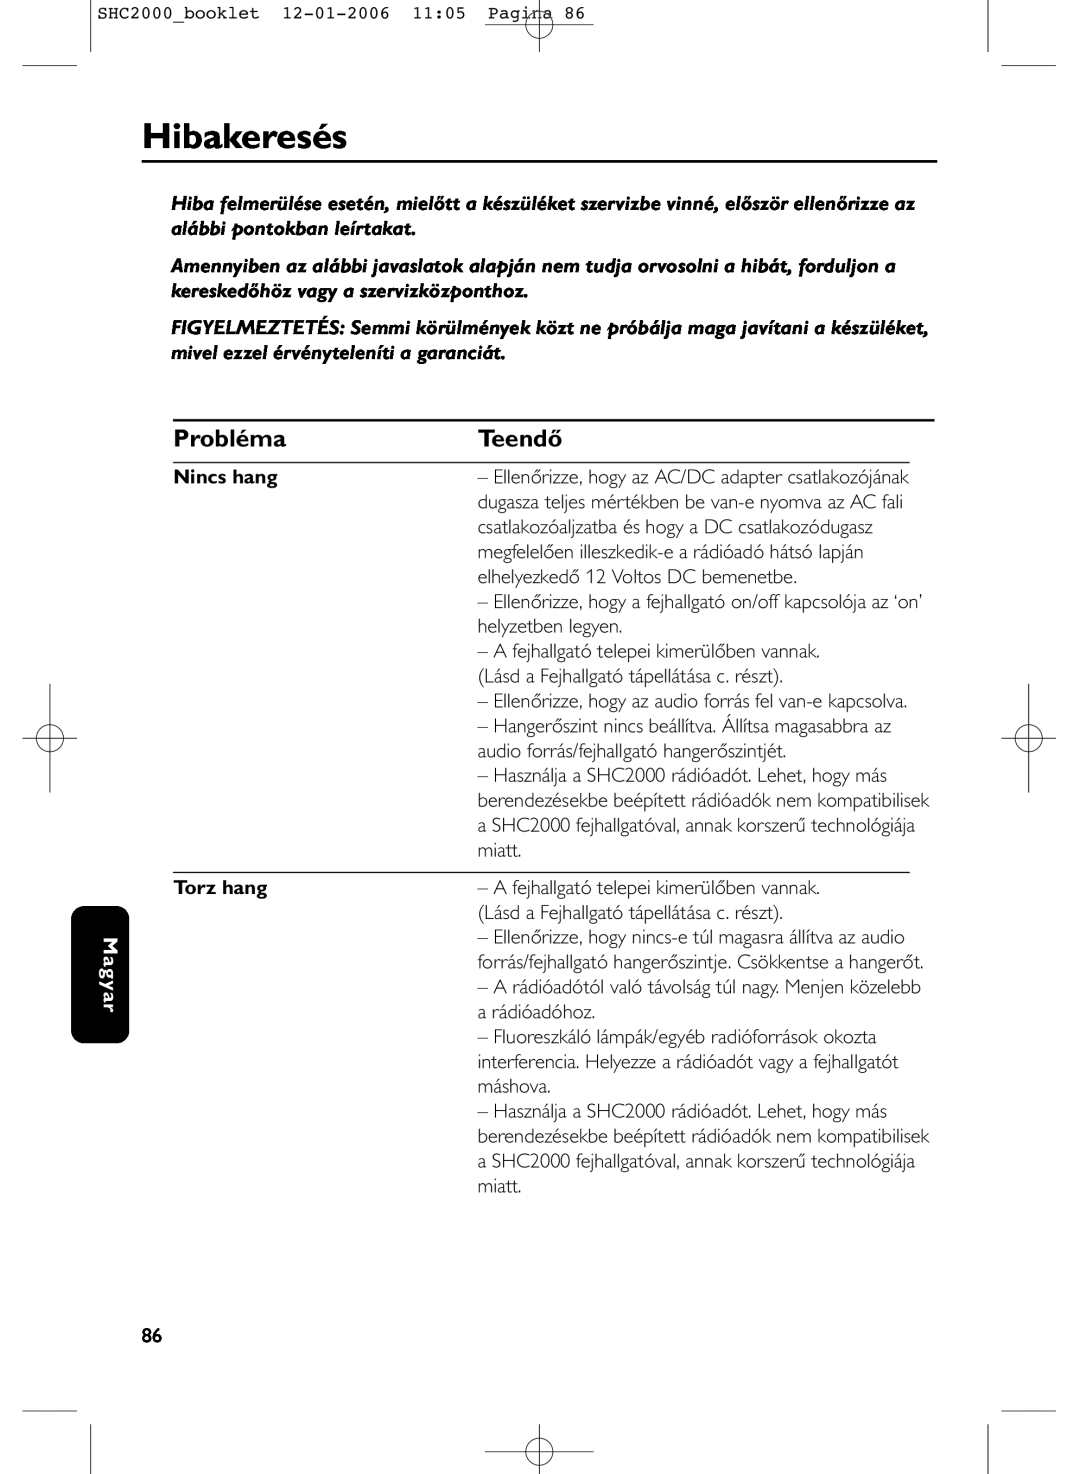 Philips SHC2000 manual Hibakeresés, Probléma, Teendő, Magyar, Nincs hang, Torz hang 